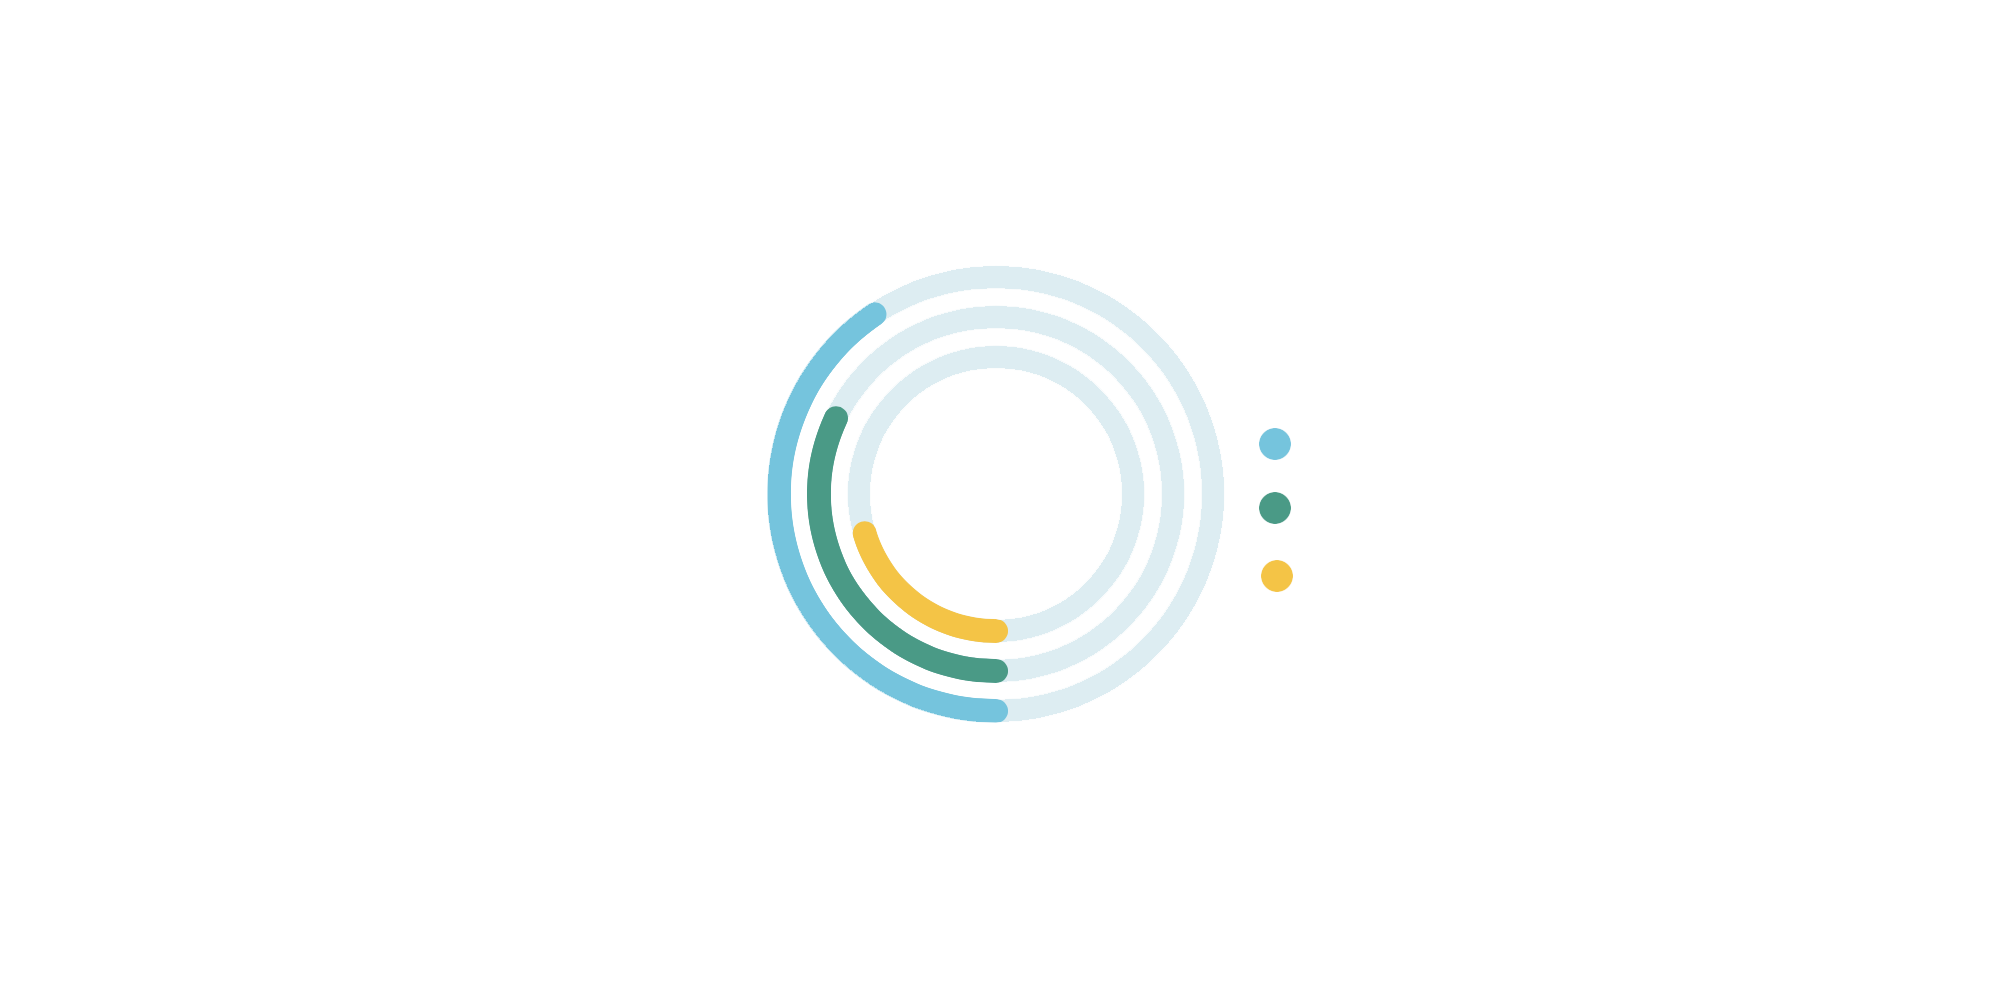 Overall B Impact Score: 101.3